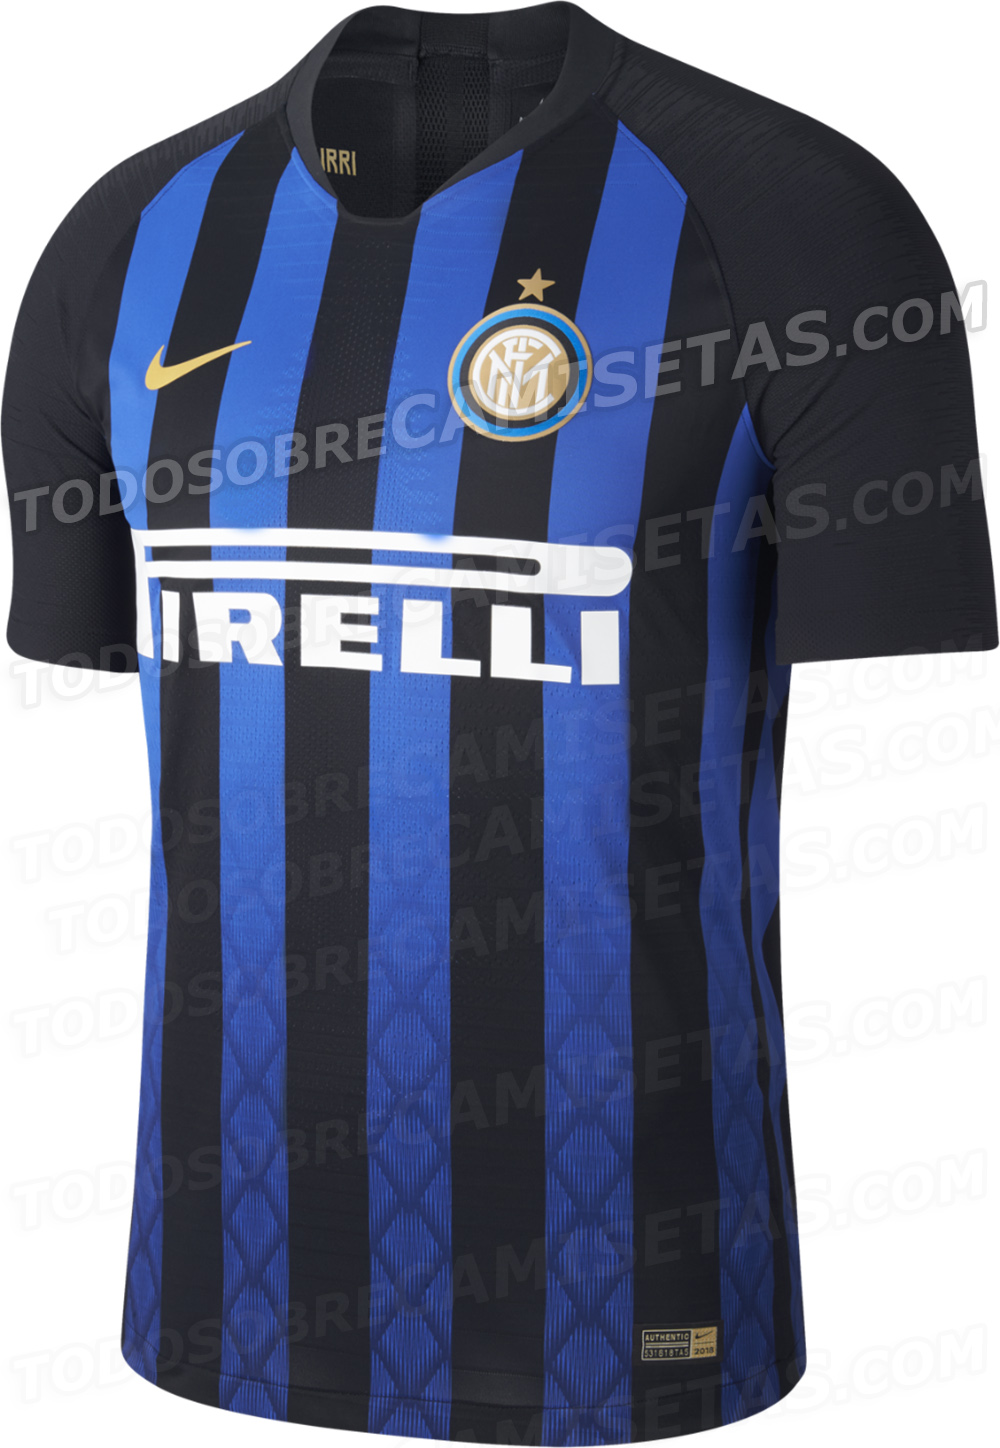 Inter Milan 2018-19 Home Kit LEAKED